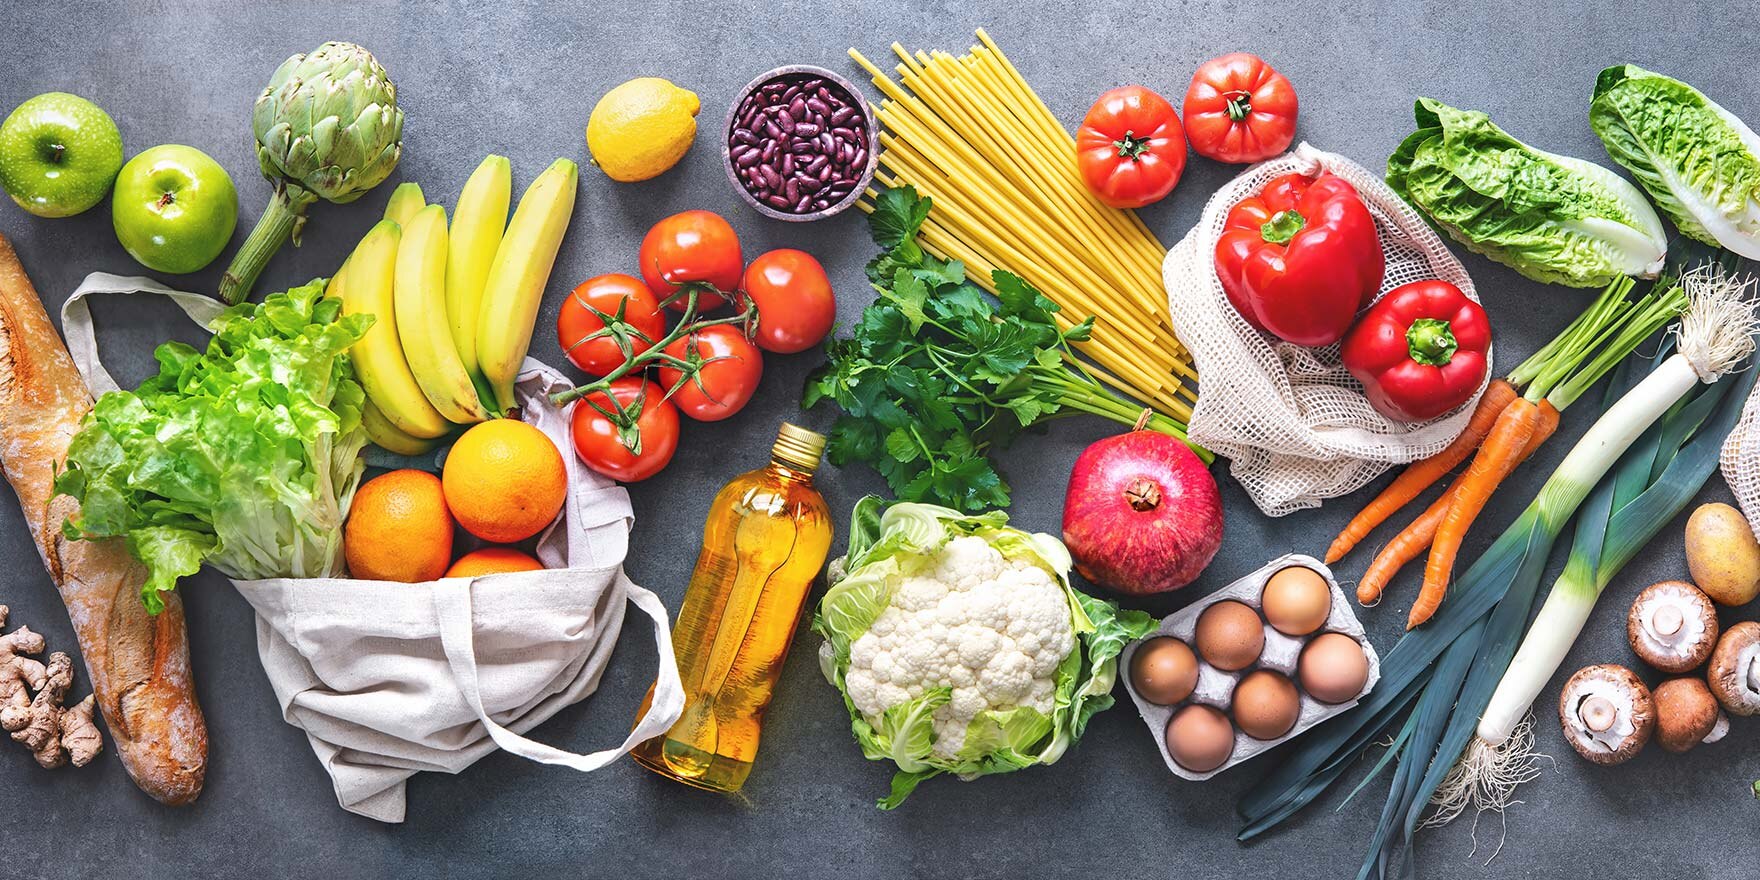 Lebensmitteleinkauf. Flache Lage von Obst, Gemüse, Gemüse, Brot und Öl in umweltfreundlichen Taschen, Draufsicht. 